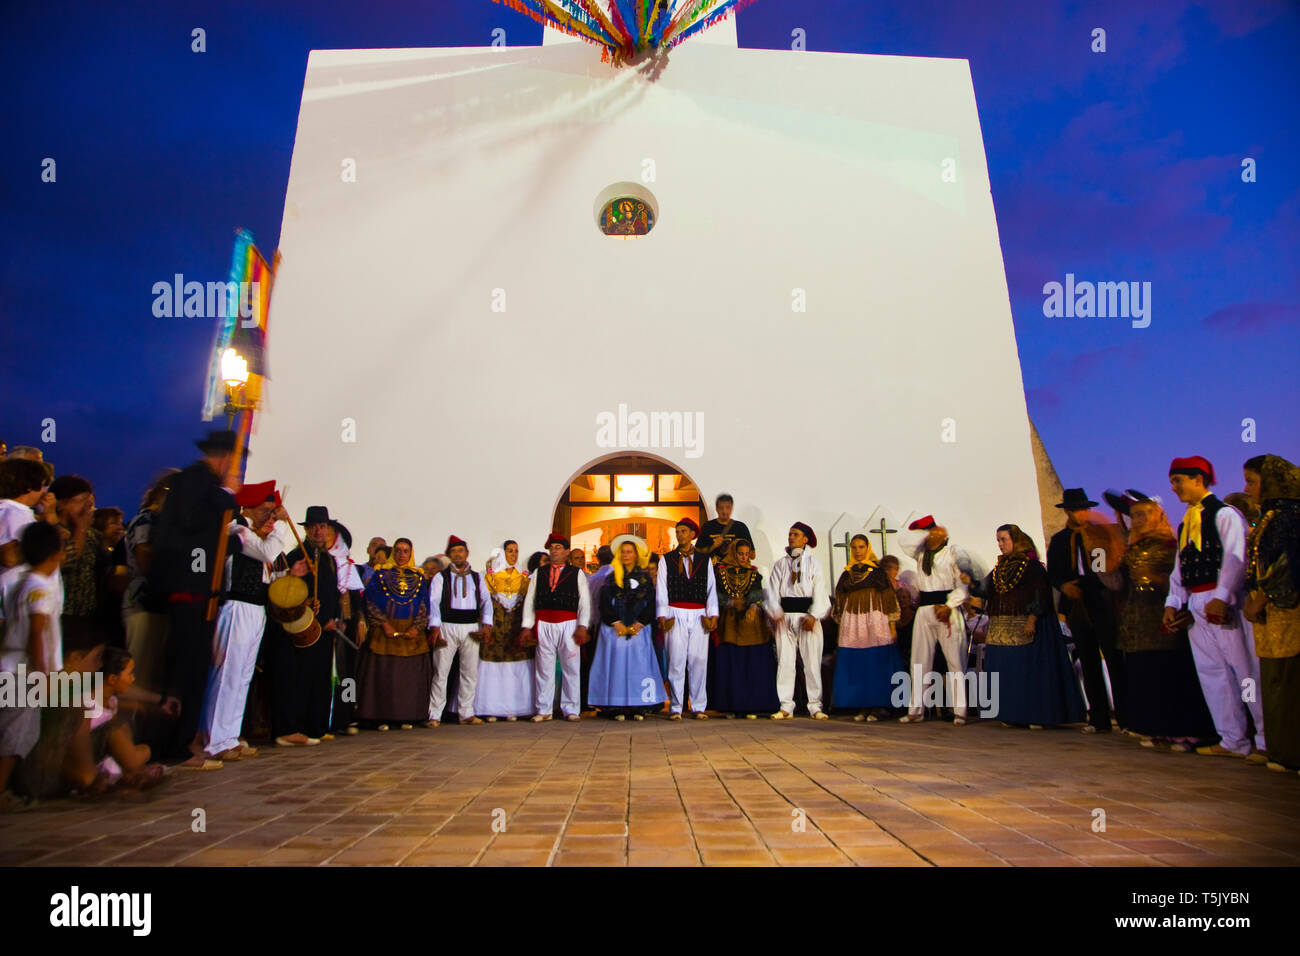 Tradiitional dance and dress in Sant Agustí des Vedrá.  Ibiza. Balearic Islands. Spain. Stock Photo